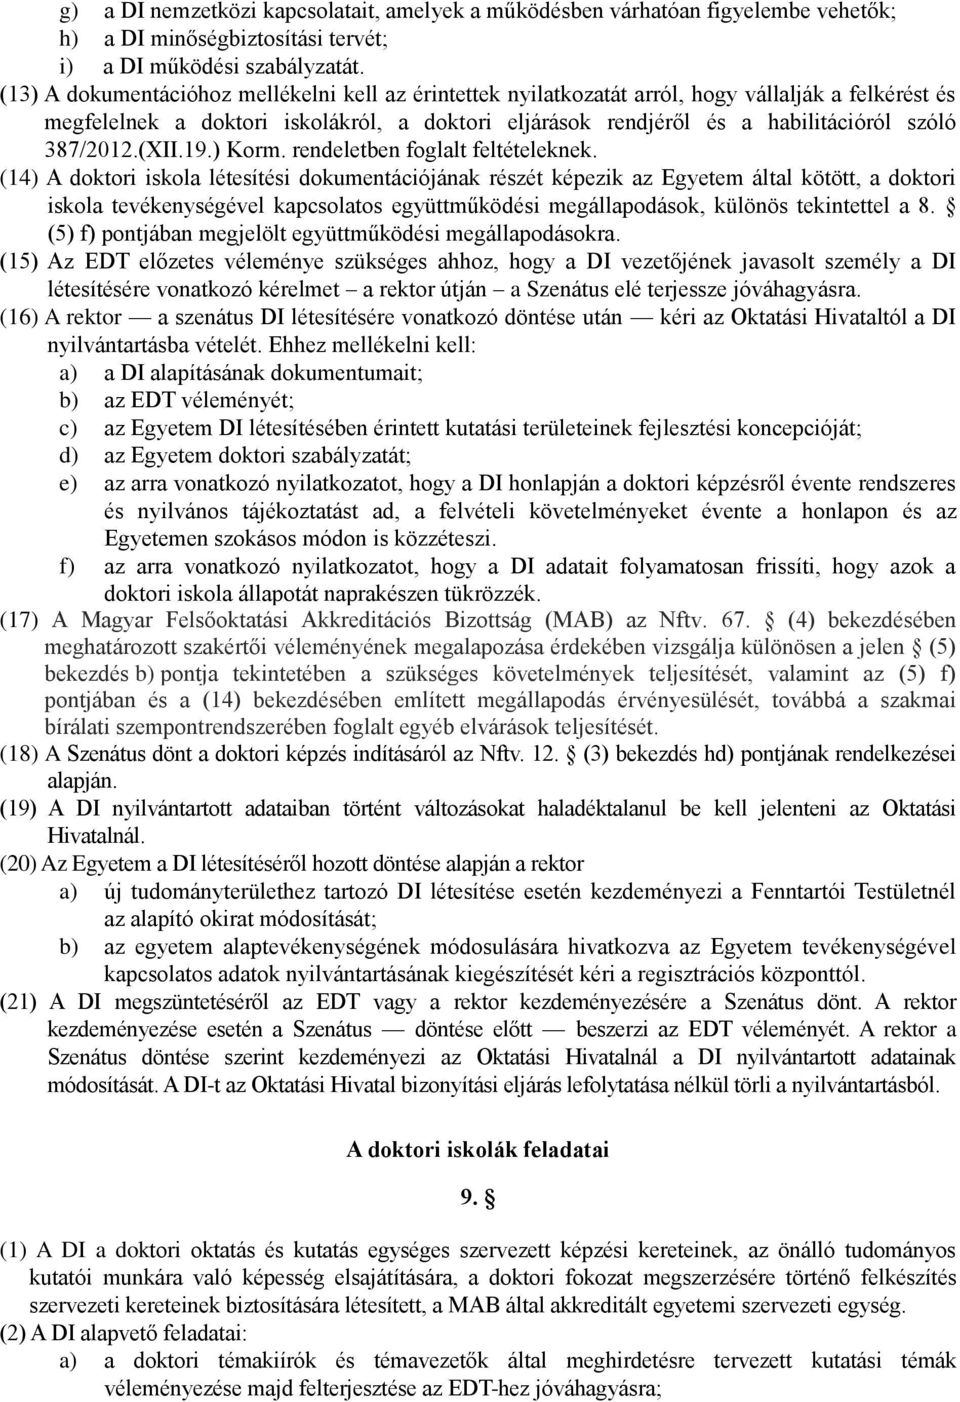 387/2012.(XII.19.) Korm. rendeletben foglalt feltételeknek.